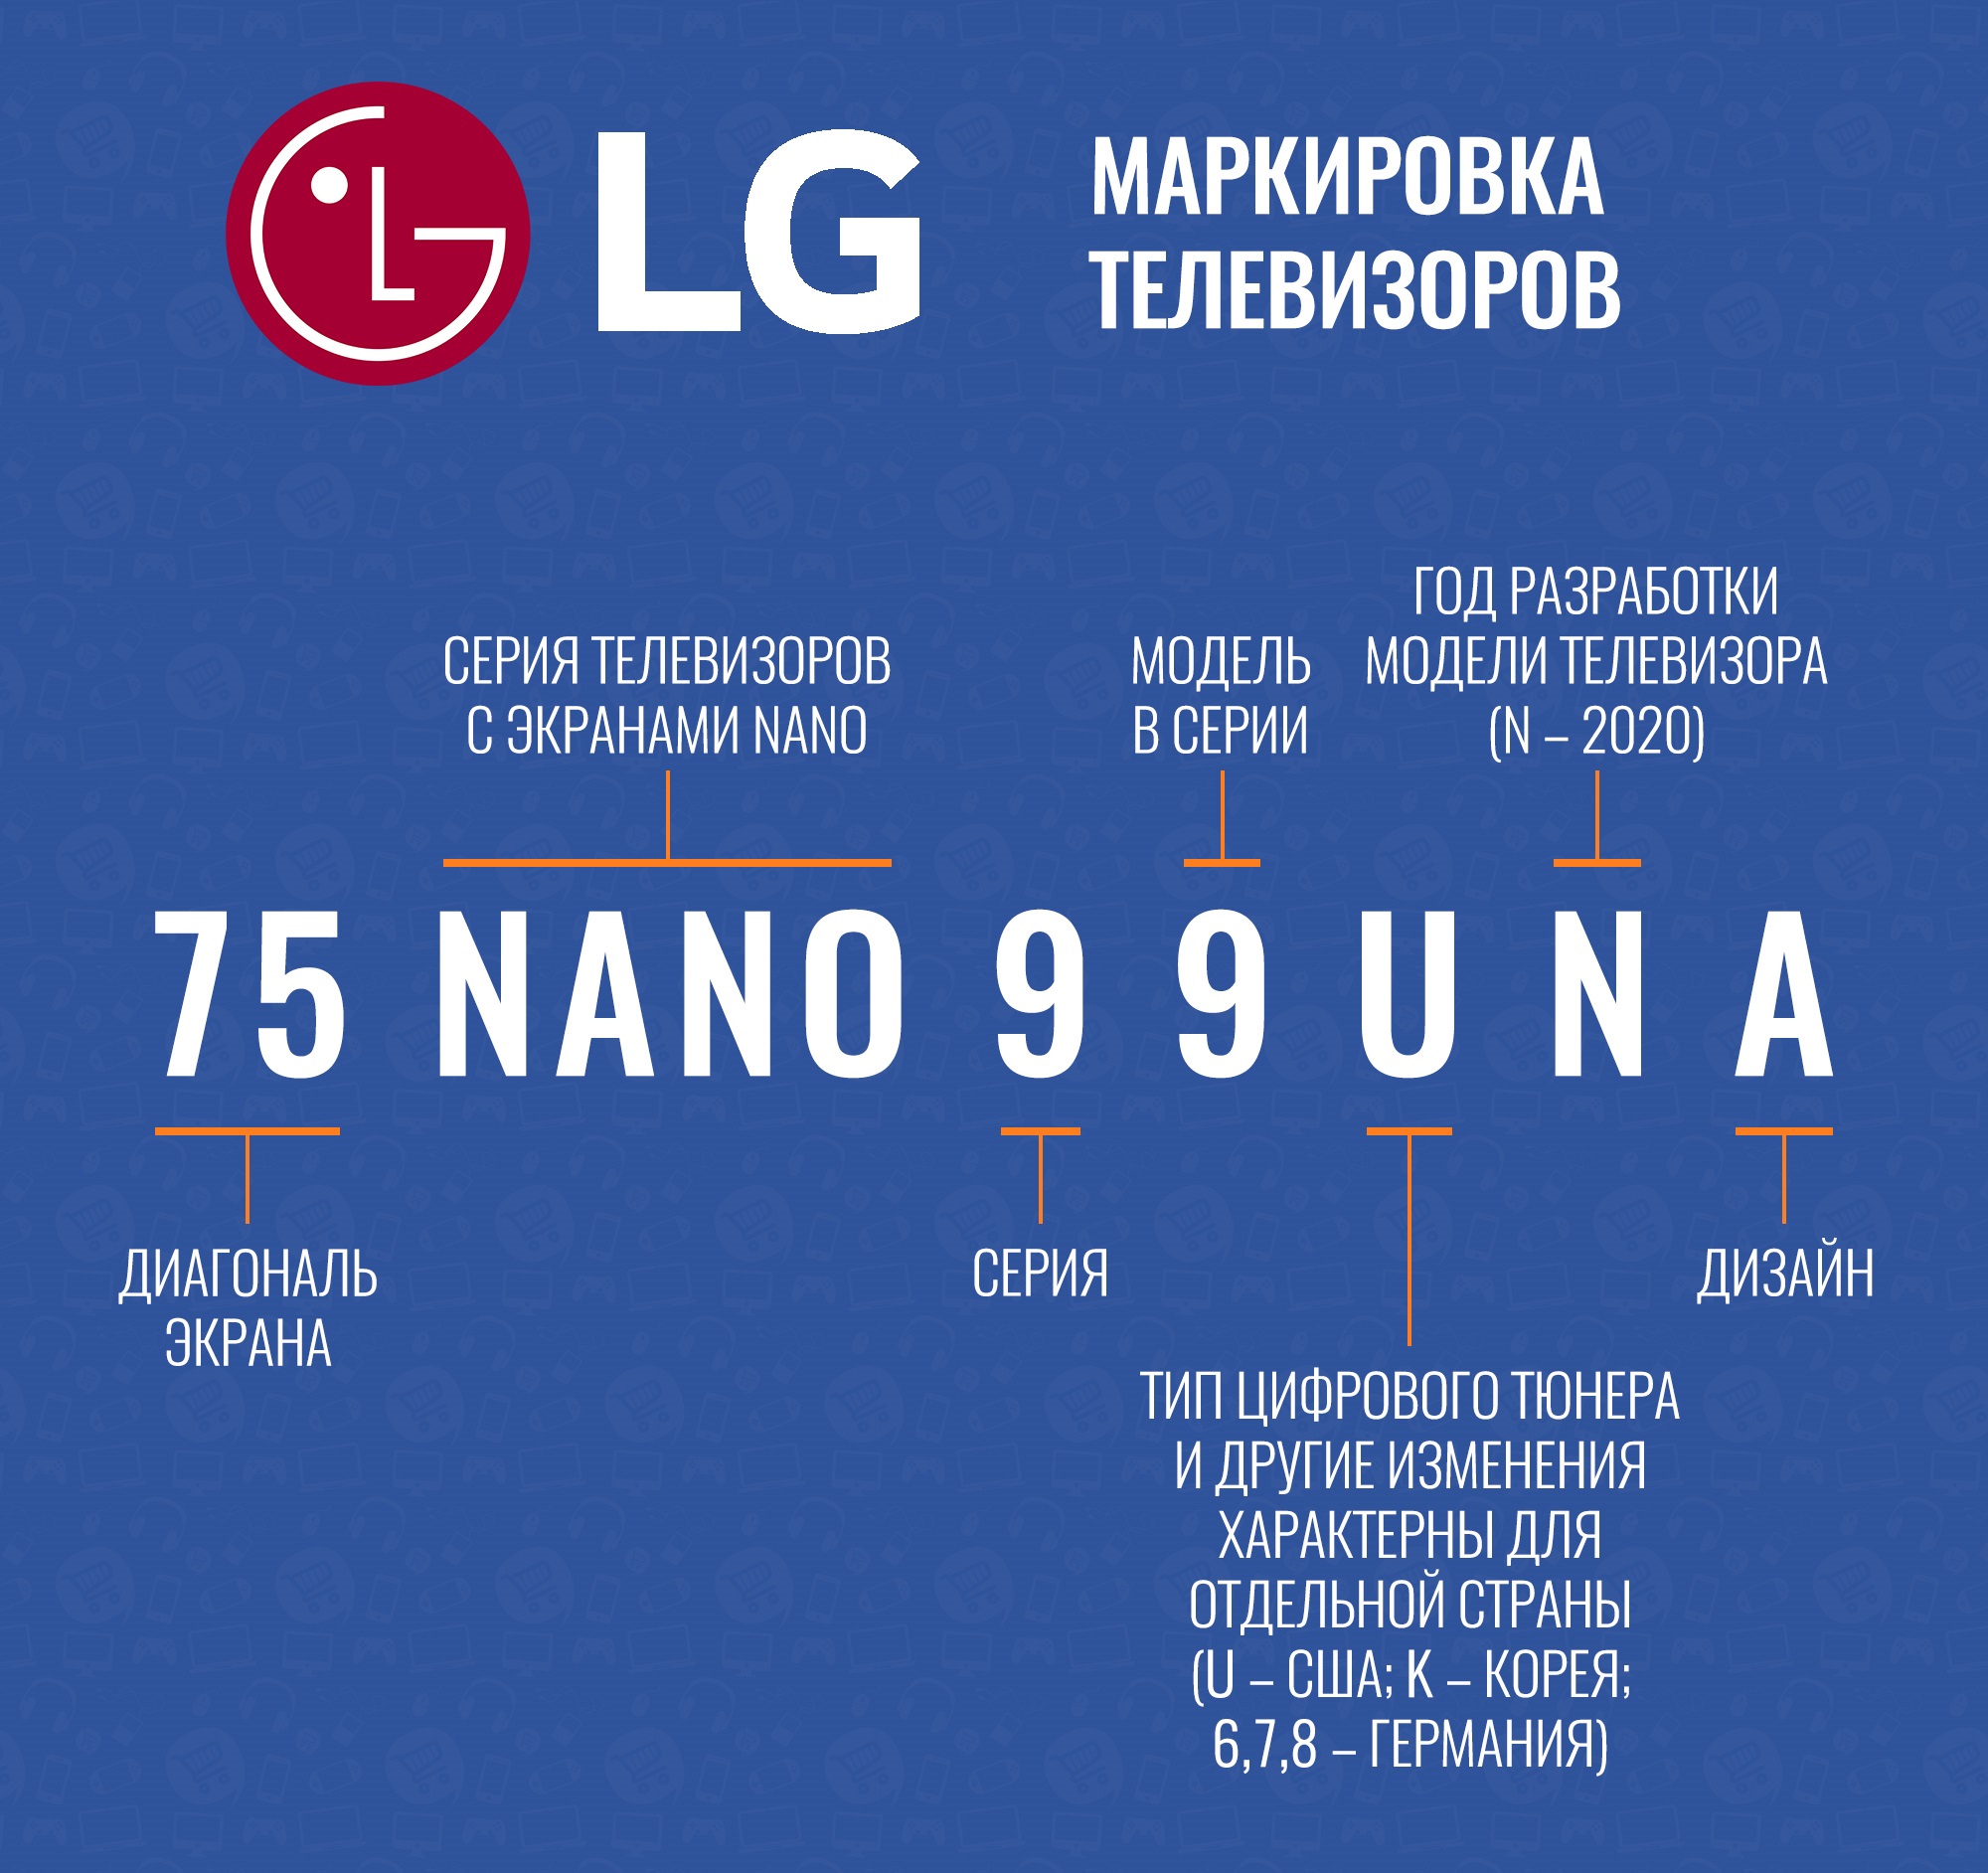 Список телевизоров lg. Расшифровка моделей телевизоров LG 2021. Расшифровка маркировки телевизоров LG 2020. Расшифровка моделей телевизоров LG Nano. Маркировка телевизоров LG расшифровка букв модели.